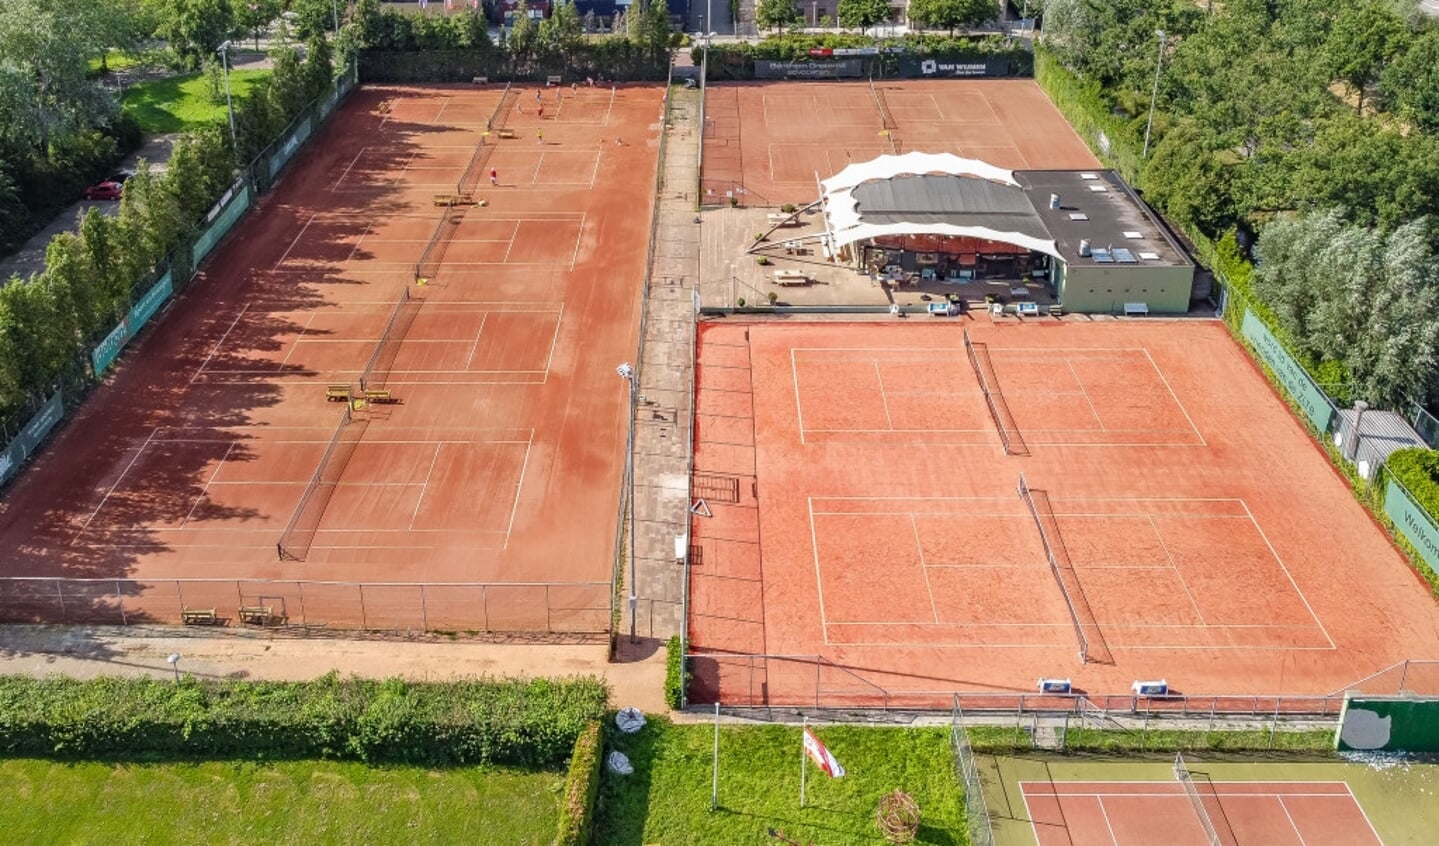  Dronefoto van sportpark ZLTB. Rechts in de hoek